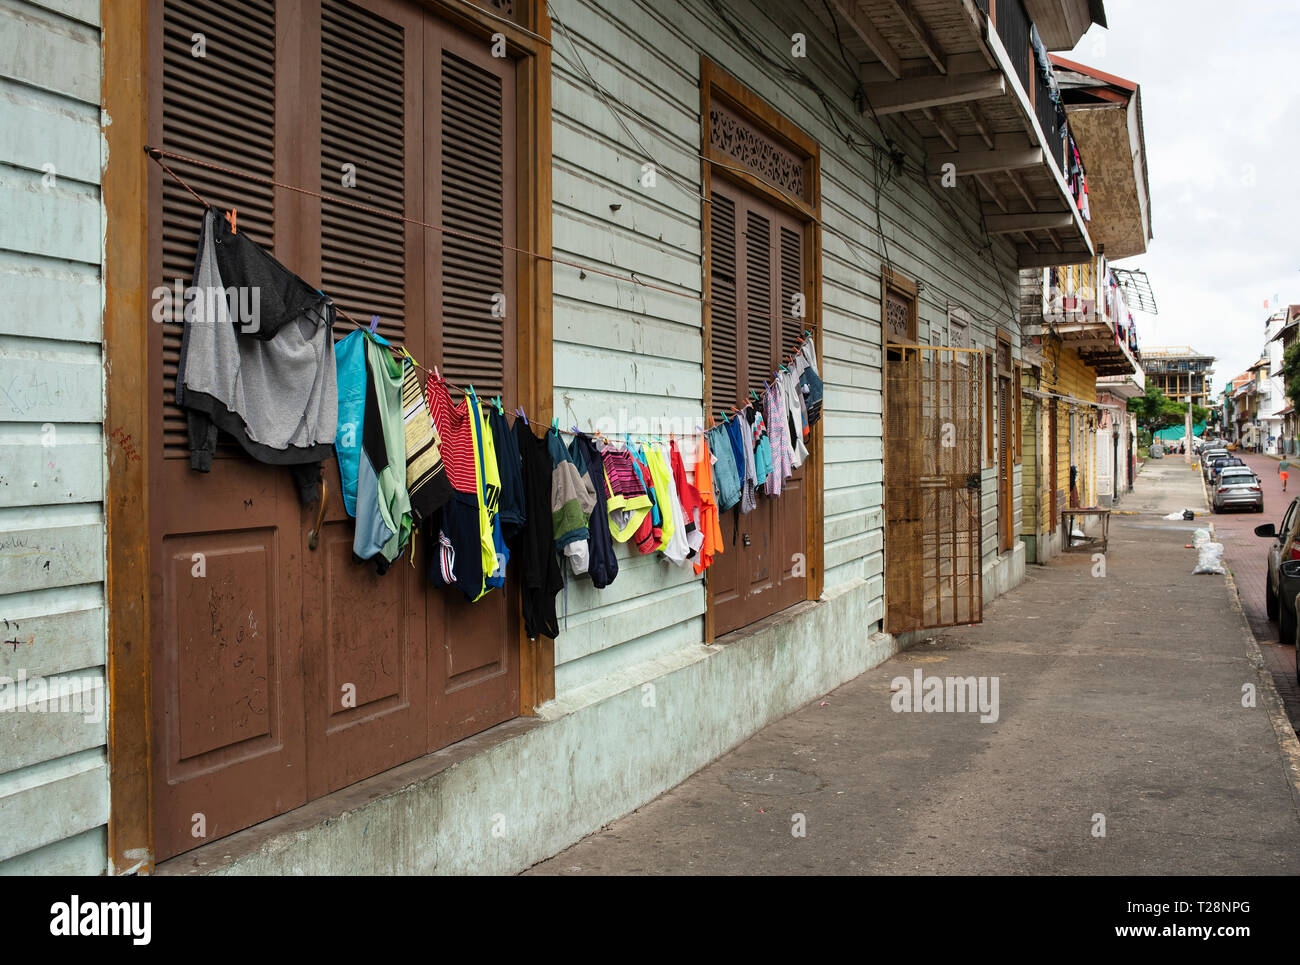 Le séchage des vêtements sur une corde à l'extérieur de l'ancien bâtiment résidentiel. Casco Viejo (vieille ville), la ville historique de la ville de Panama, Panama. Oct 2018 Banque D'Images